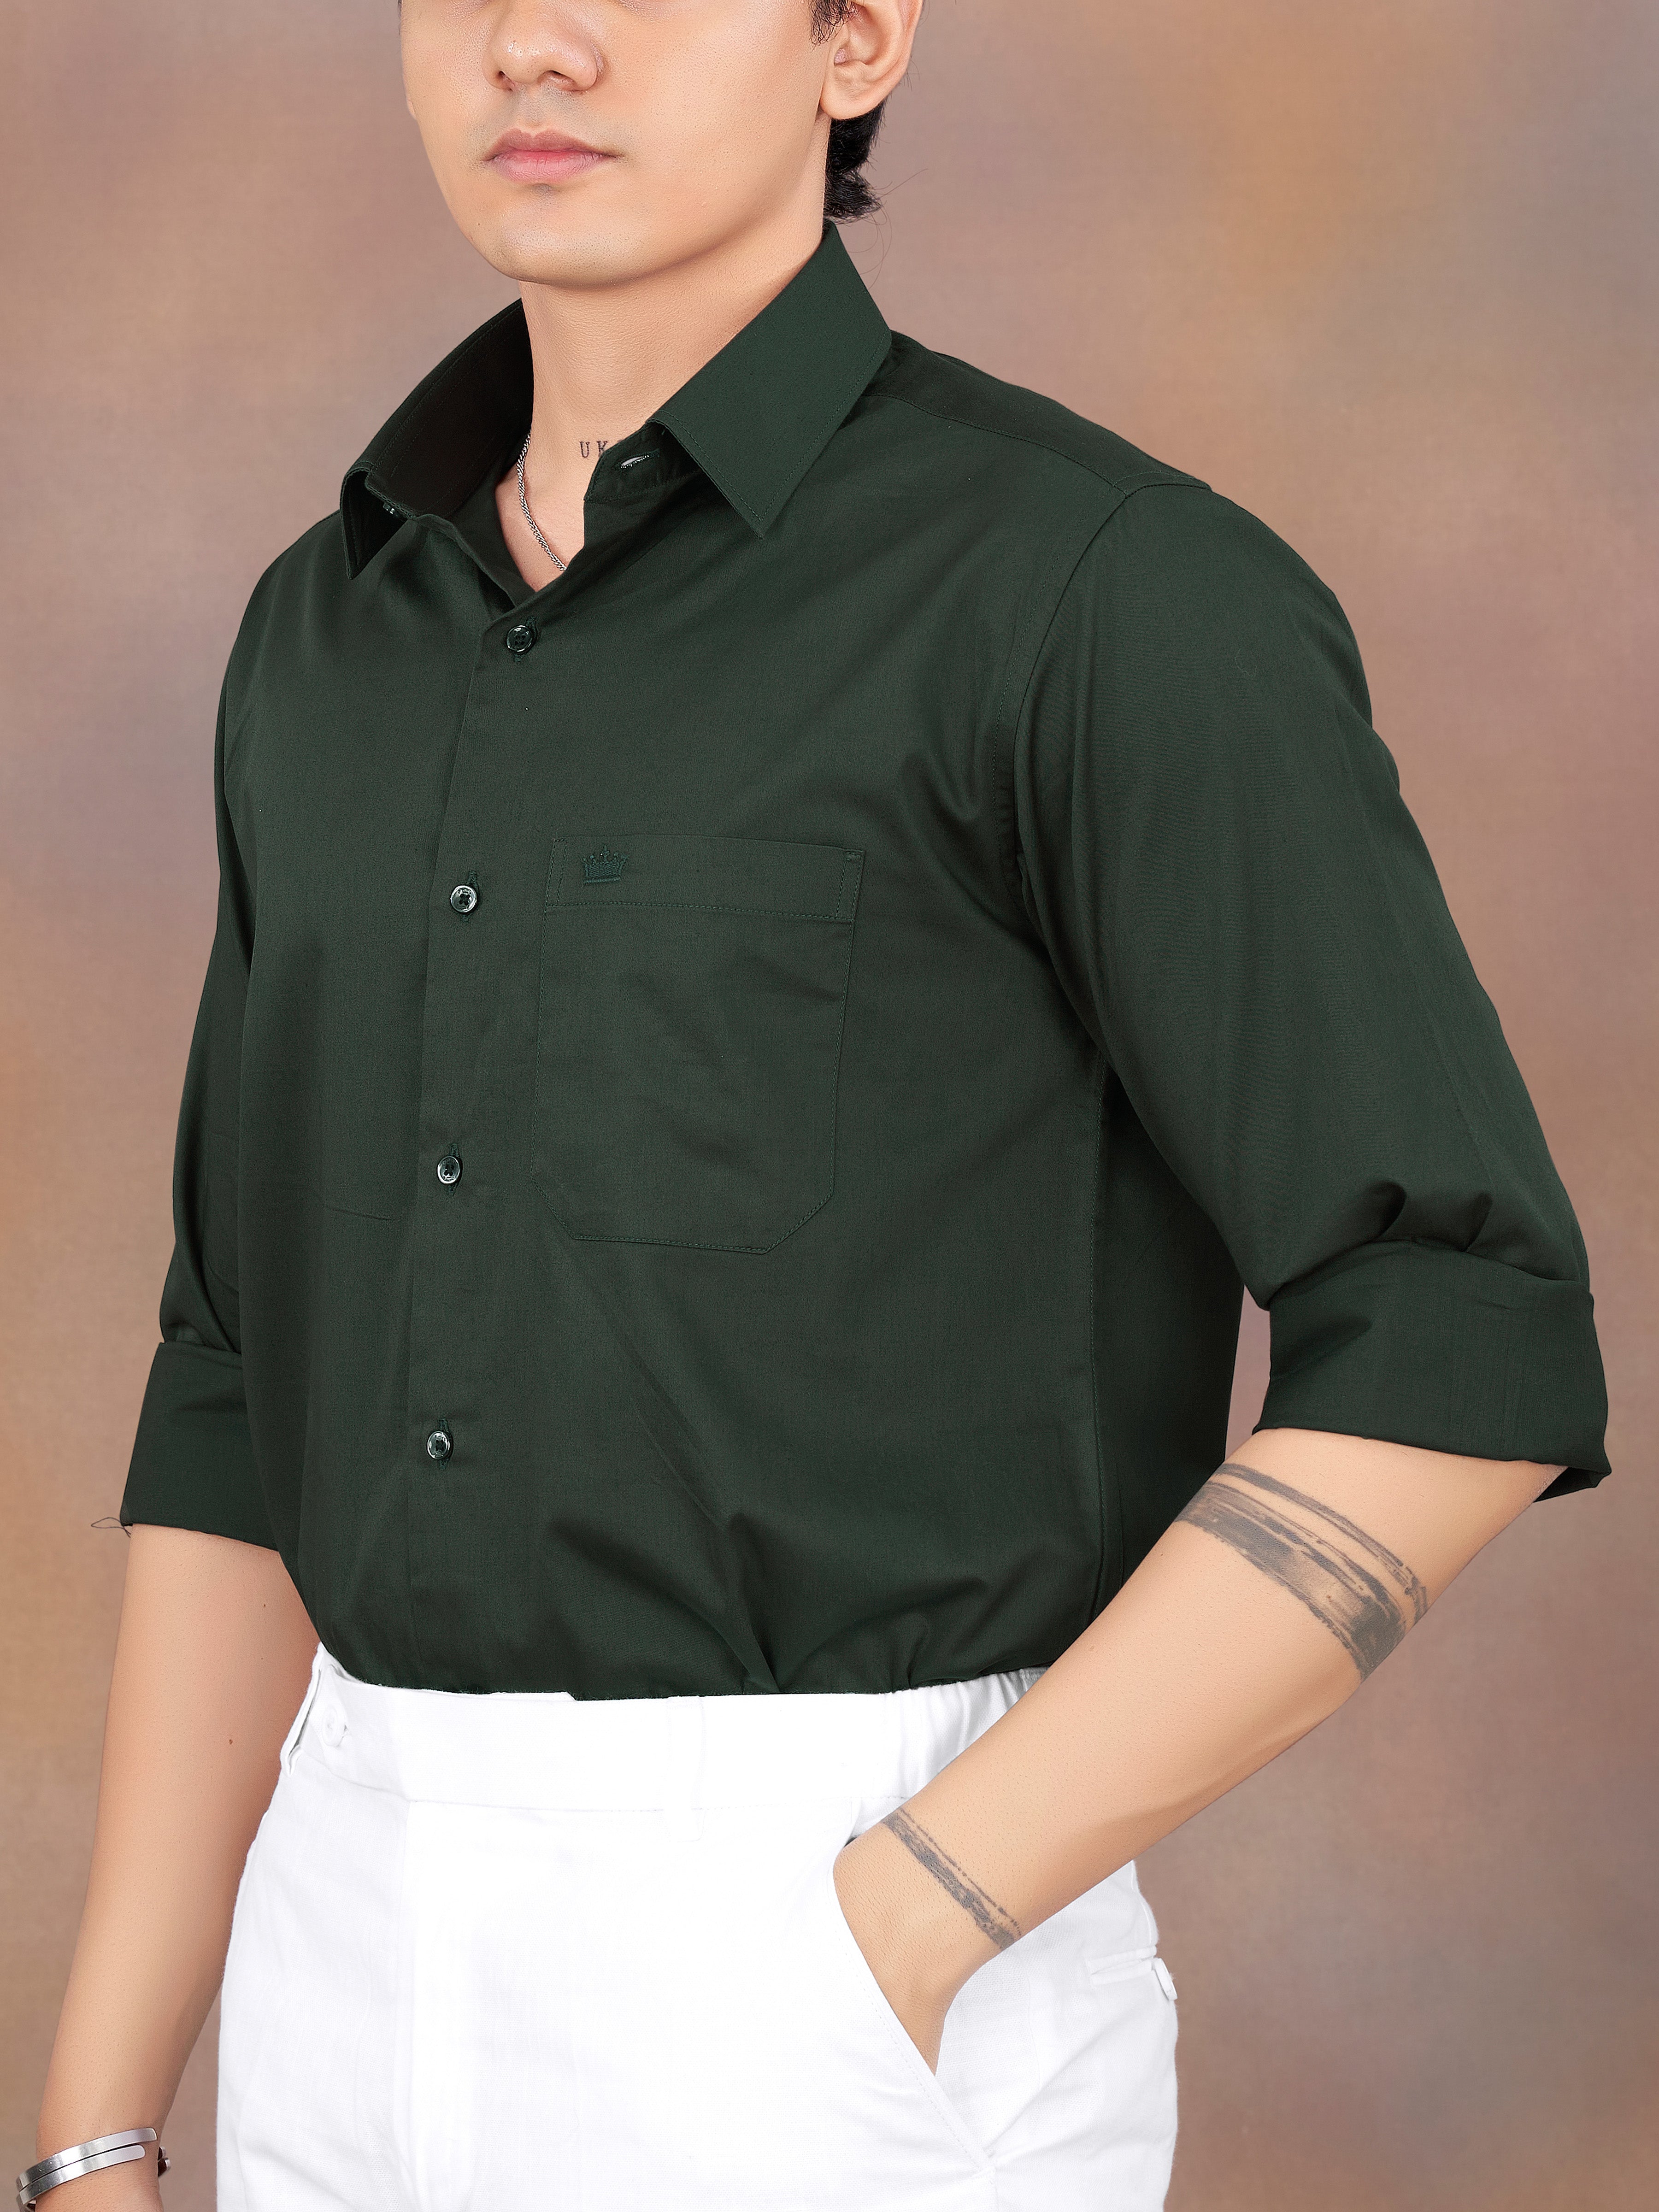 Timber Green Subtle Sheen Super Soft Premium Cotton Shirt